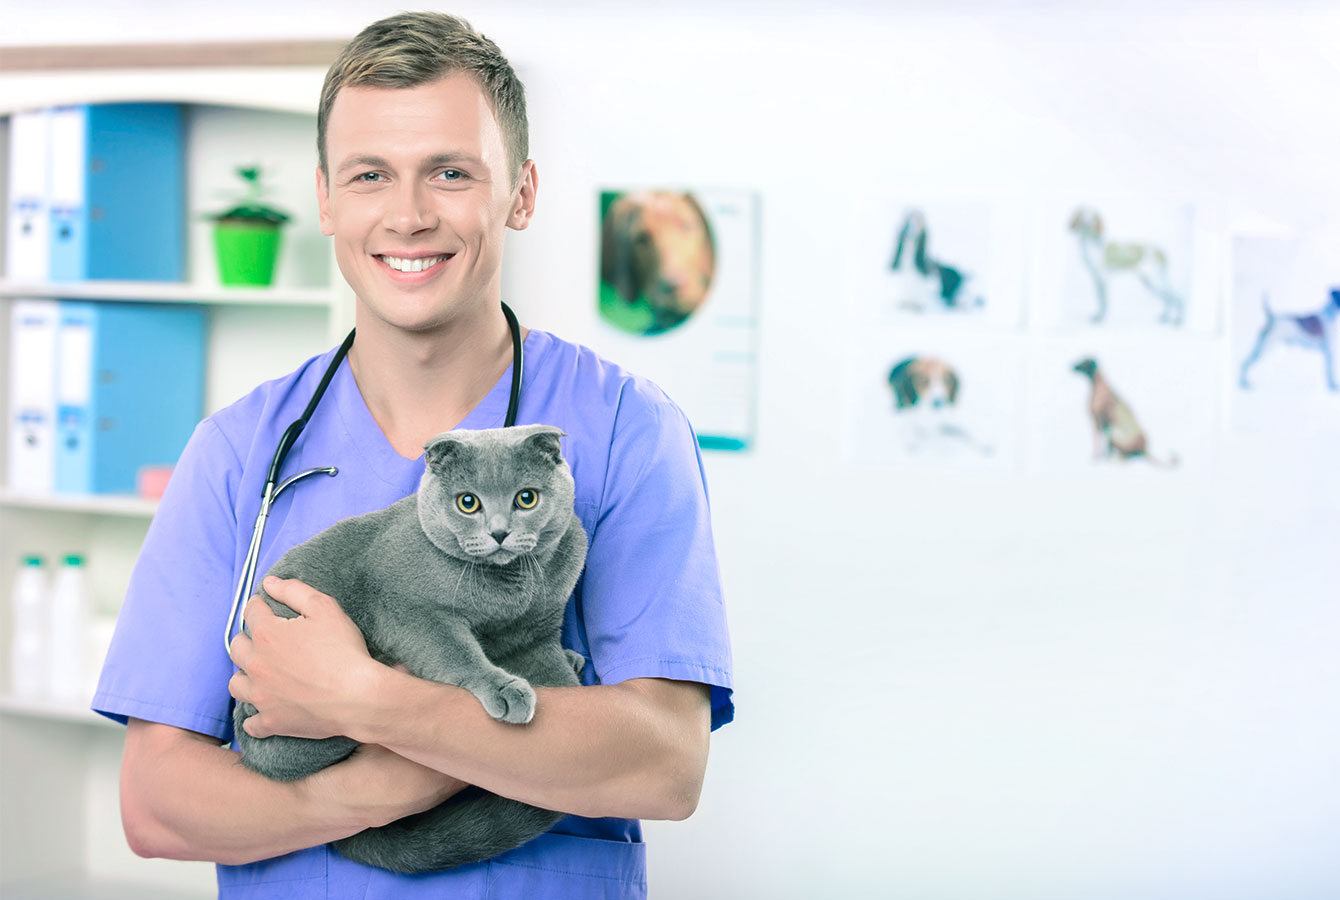 Mann veterinær som holder en katt hvis eiere booket service ved hjelp av Planfy booking system.